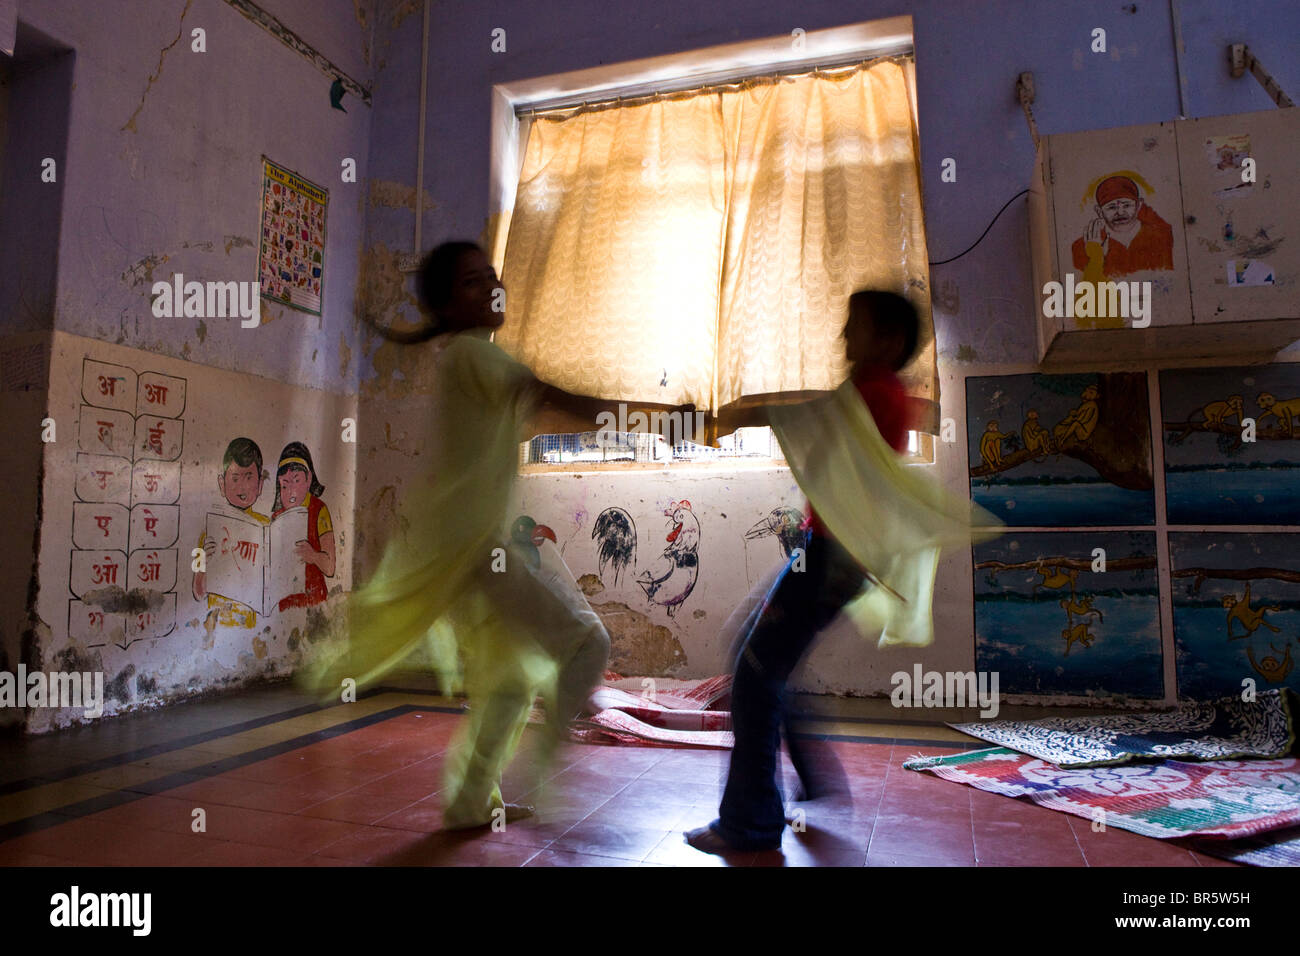 Le giovani ragazze a giocare presso il Centro Kamatipura. L'organizzazione è specializzato nella cura dei bambini del quartiere a luci rosse. Foto Stock